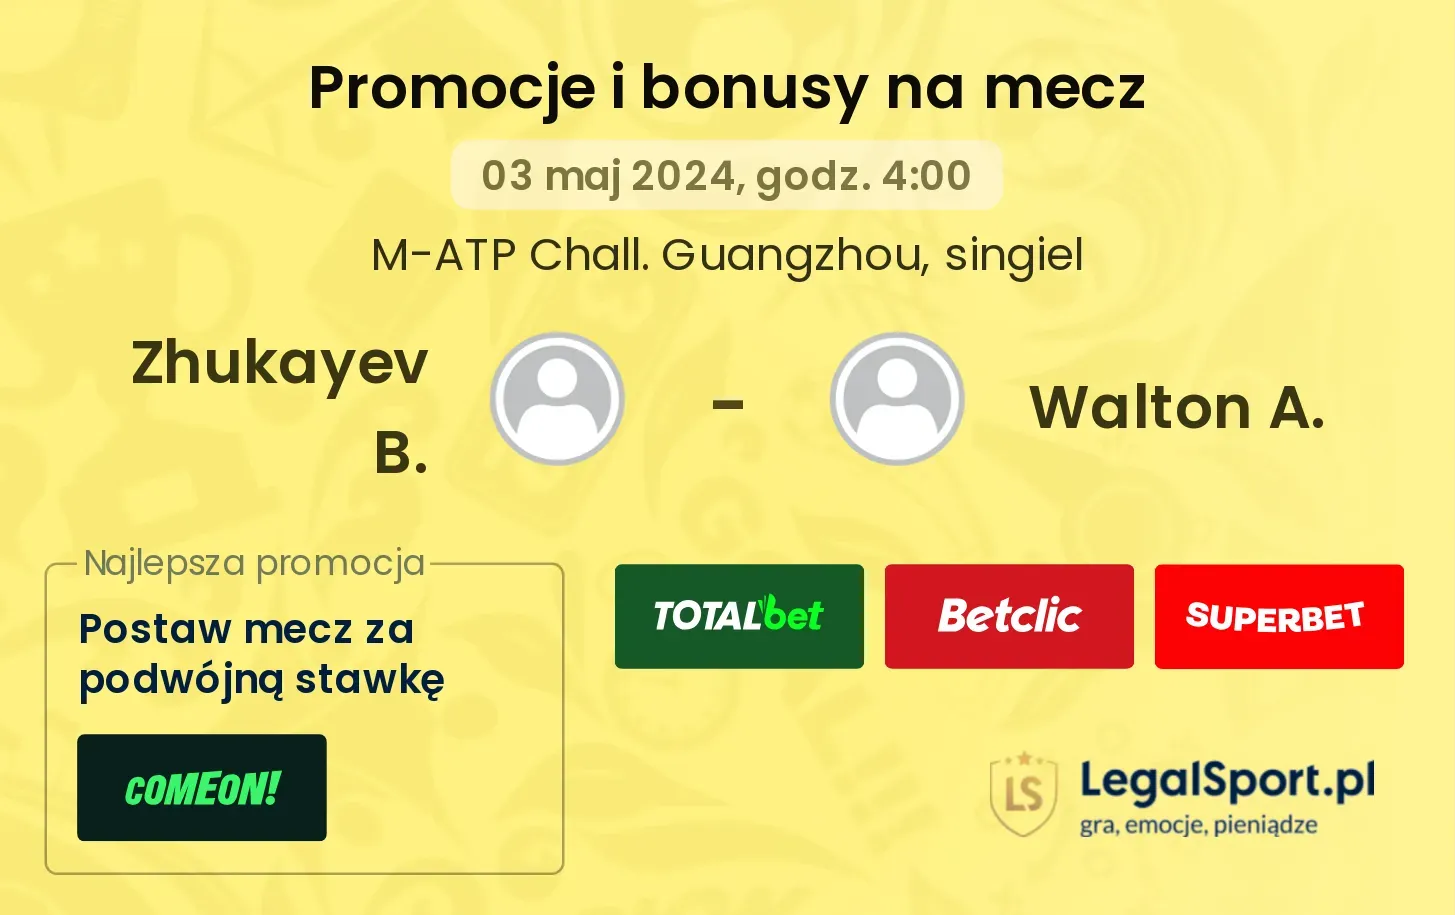 Zhukayev B. - Walton A. promocje bonusy na mecz